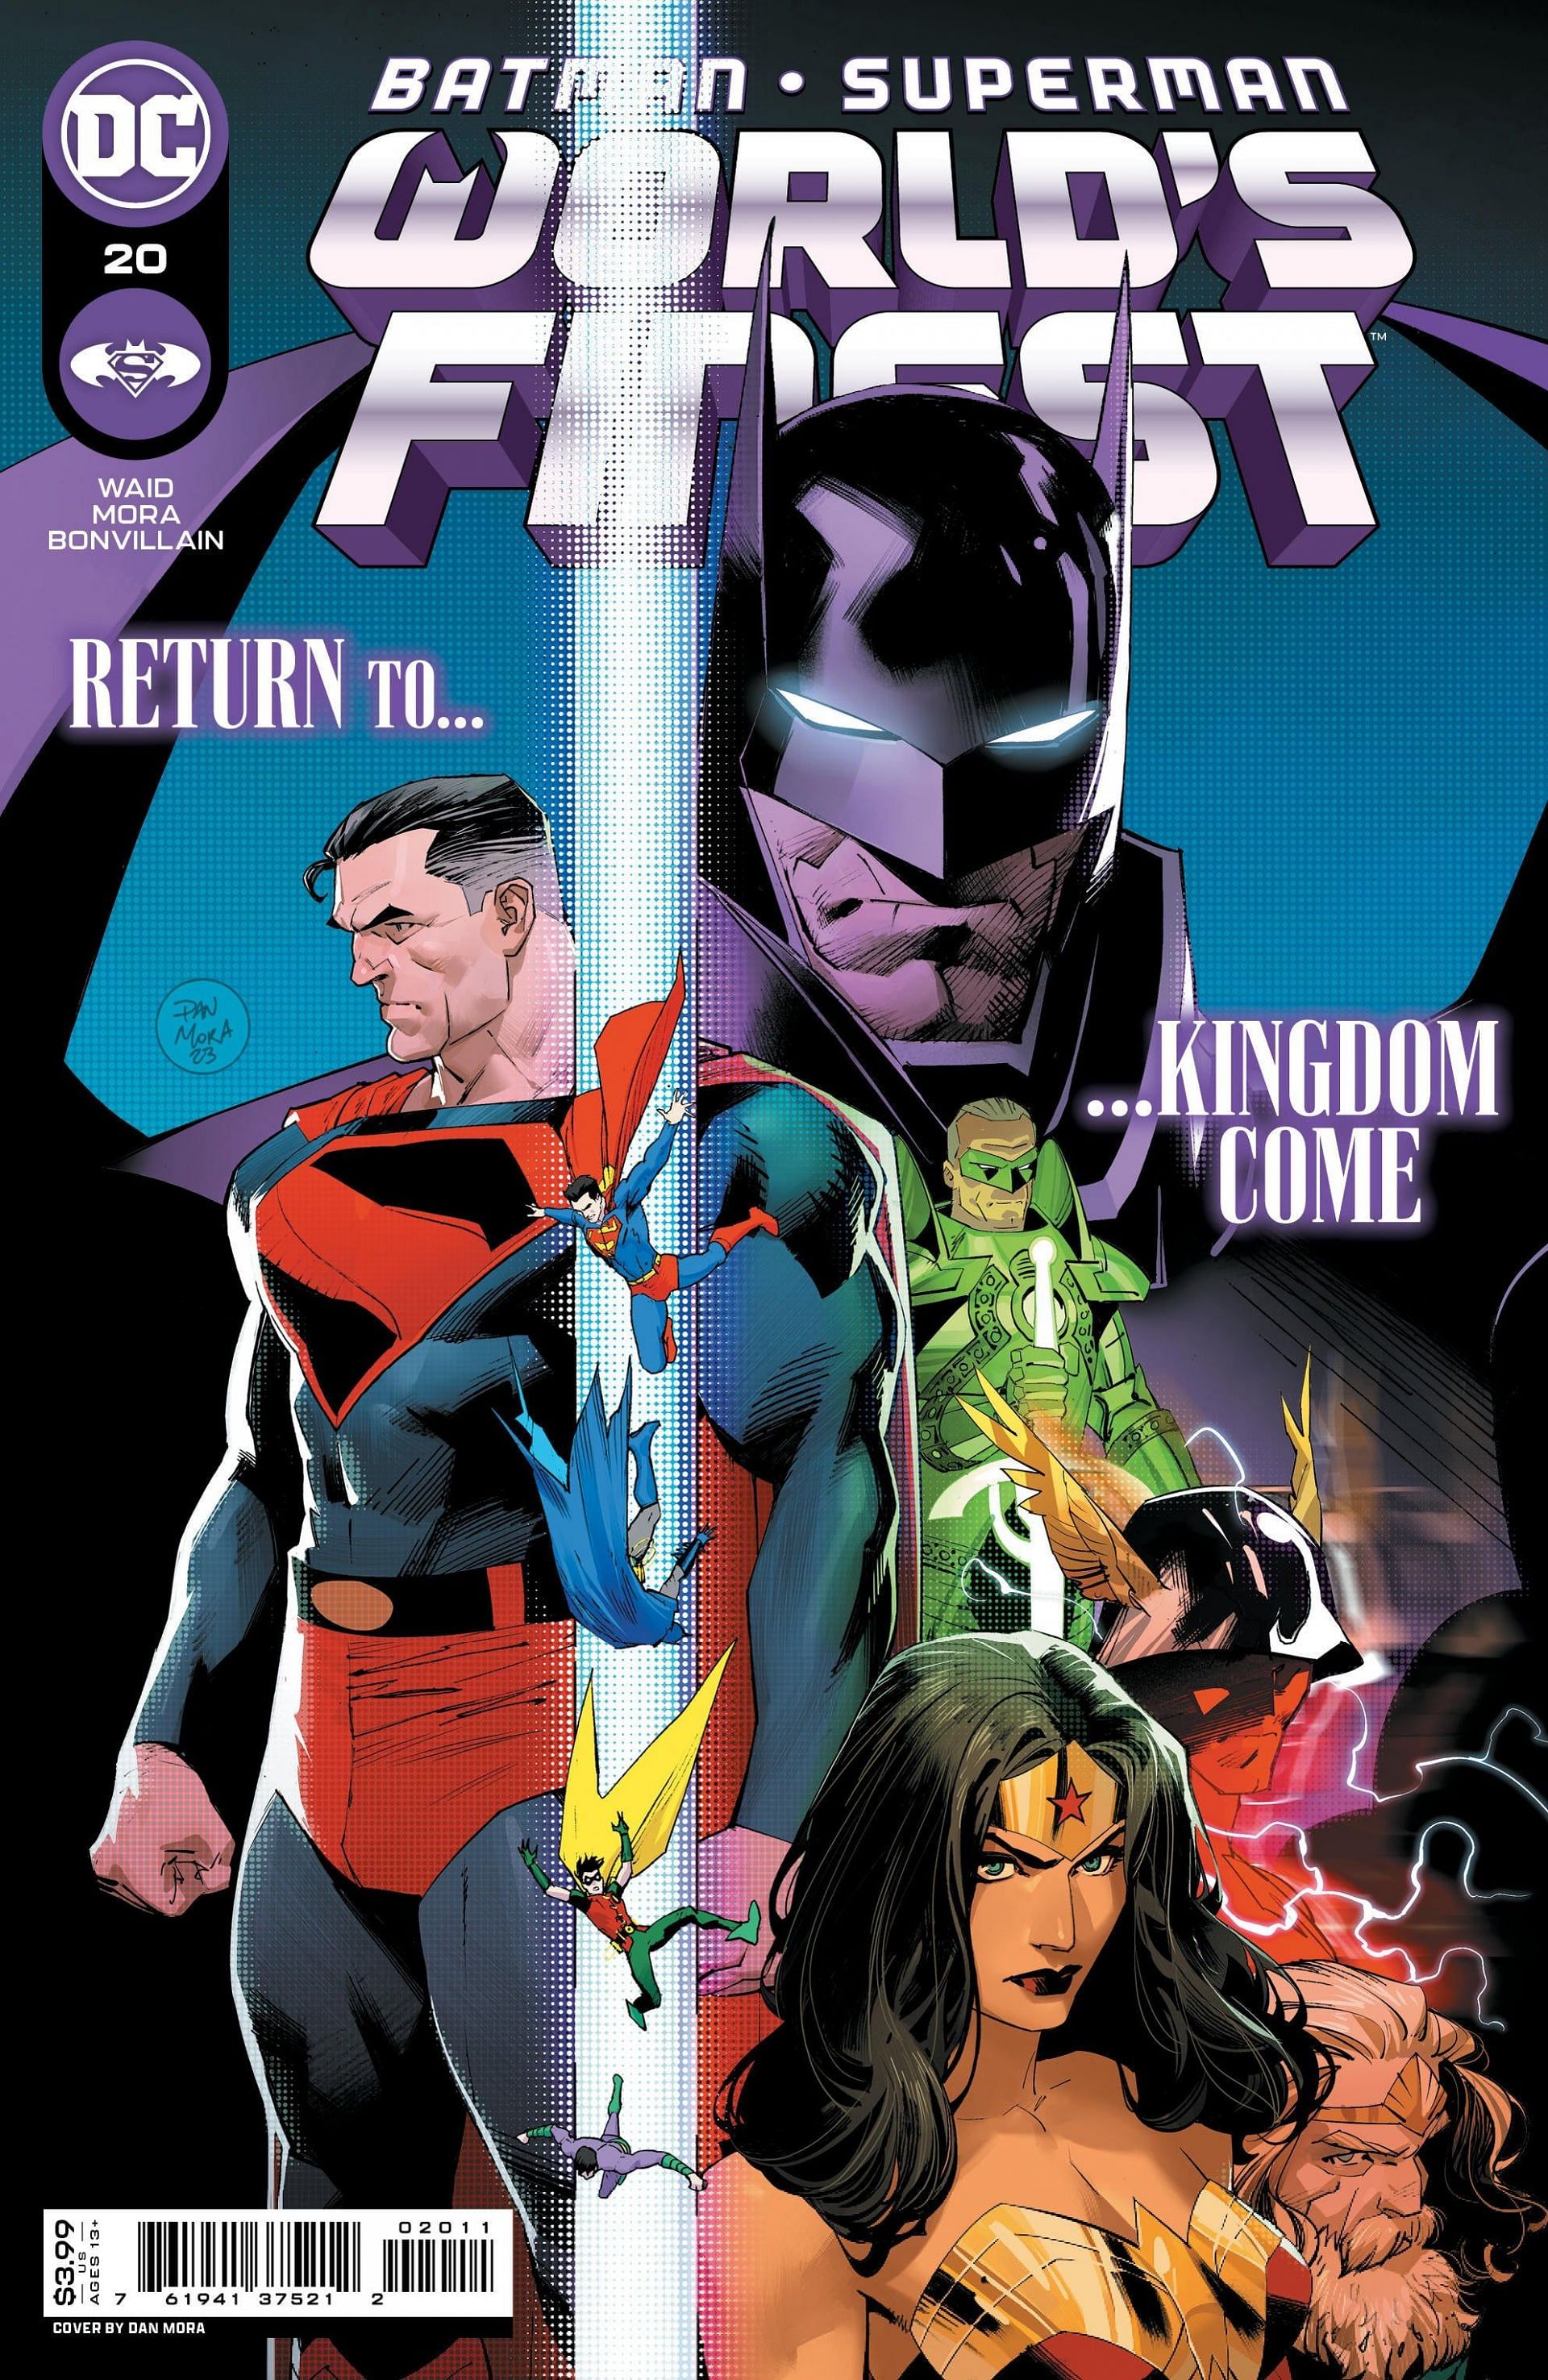 Original cover by Dan Mora for issue #20 (Image via DC)